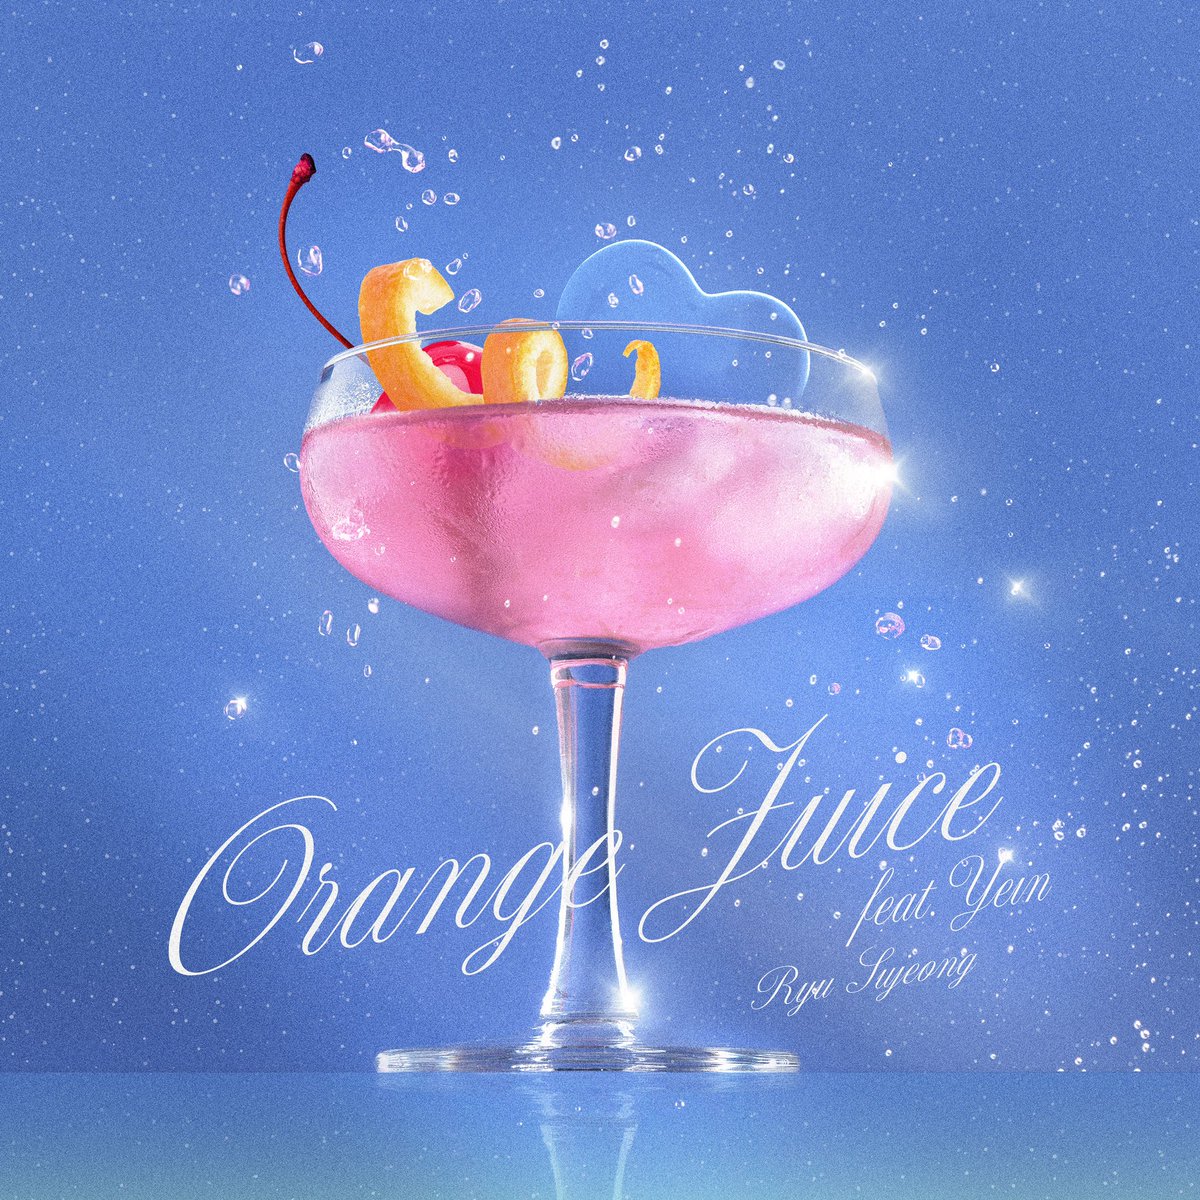 류수정(Ryu Sujeong) 𝗢𝗿𝗮𝗻𝗴𝗲 𝗝𝘂𝗶𝗰𝗲 (feat. 정예인 (Yein)) 2024.05.16 6PM(KST) Digital Single Release #류수정 #RyuSujeong #HouseofDreams #하우스오브드림스 #OrangeJuice